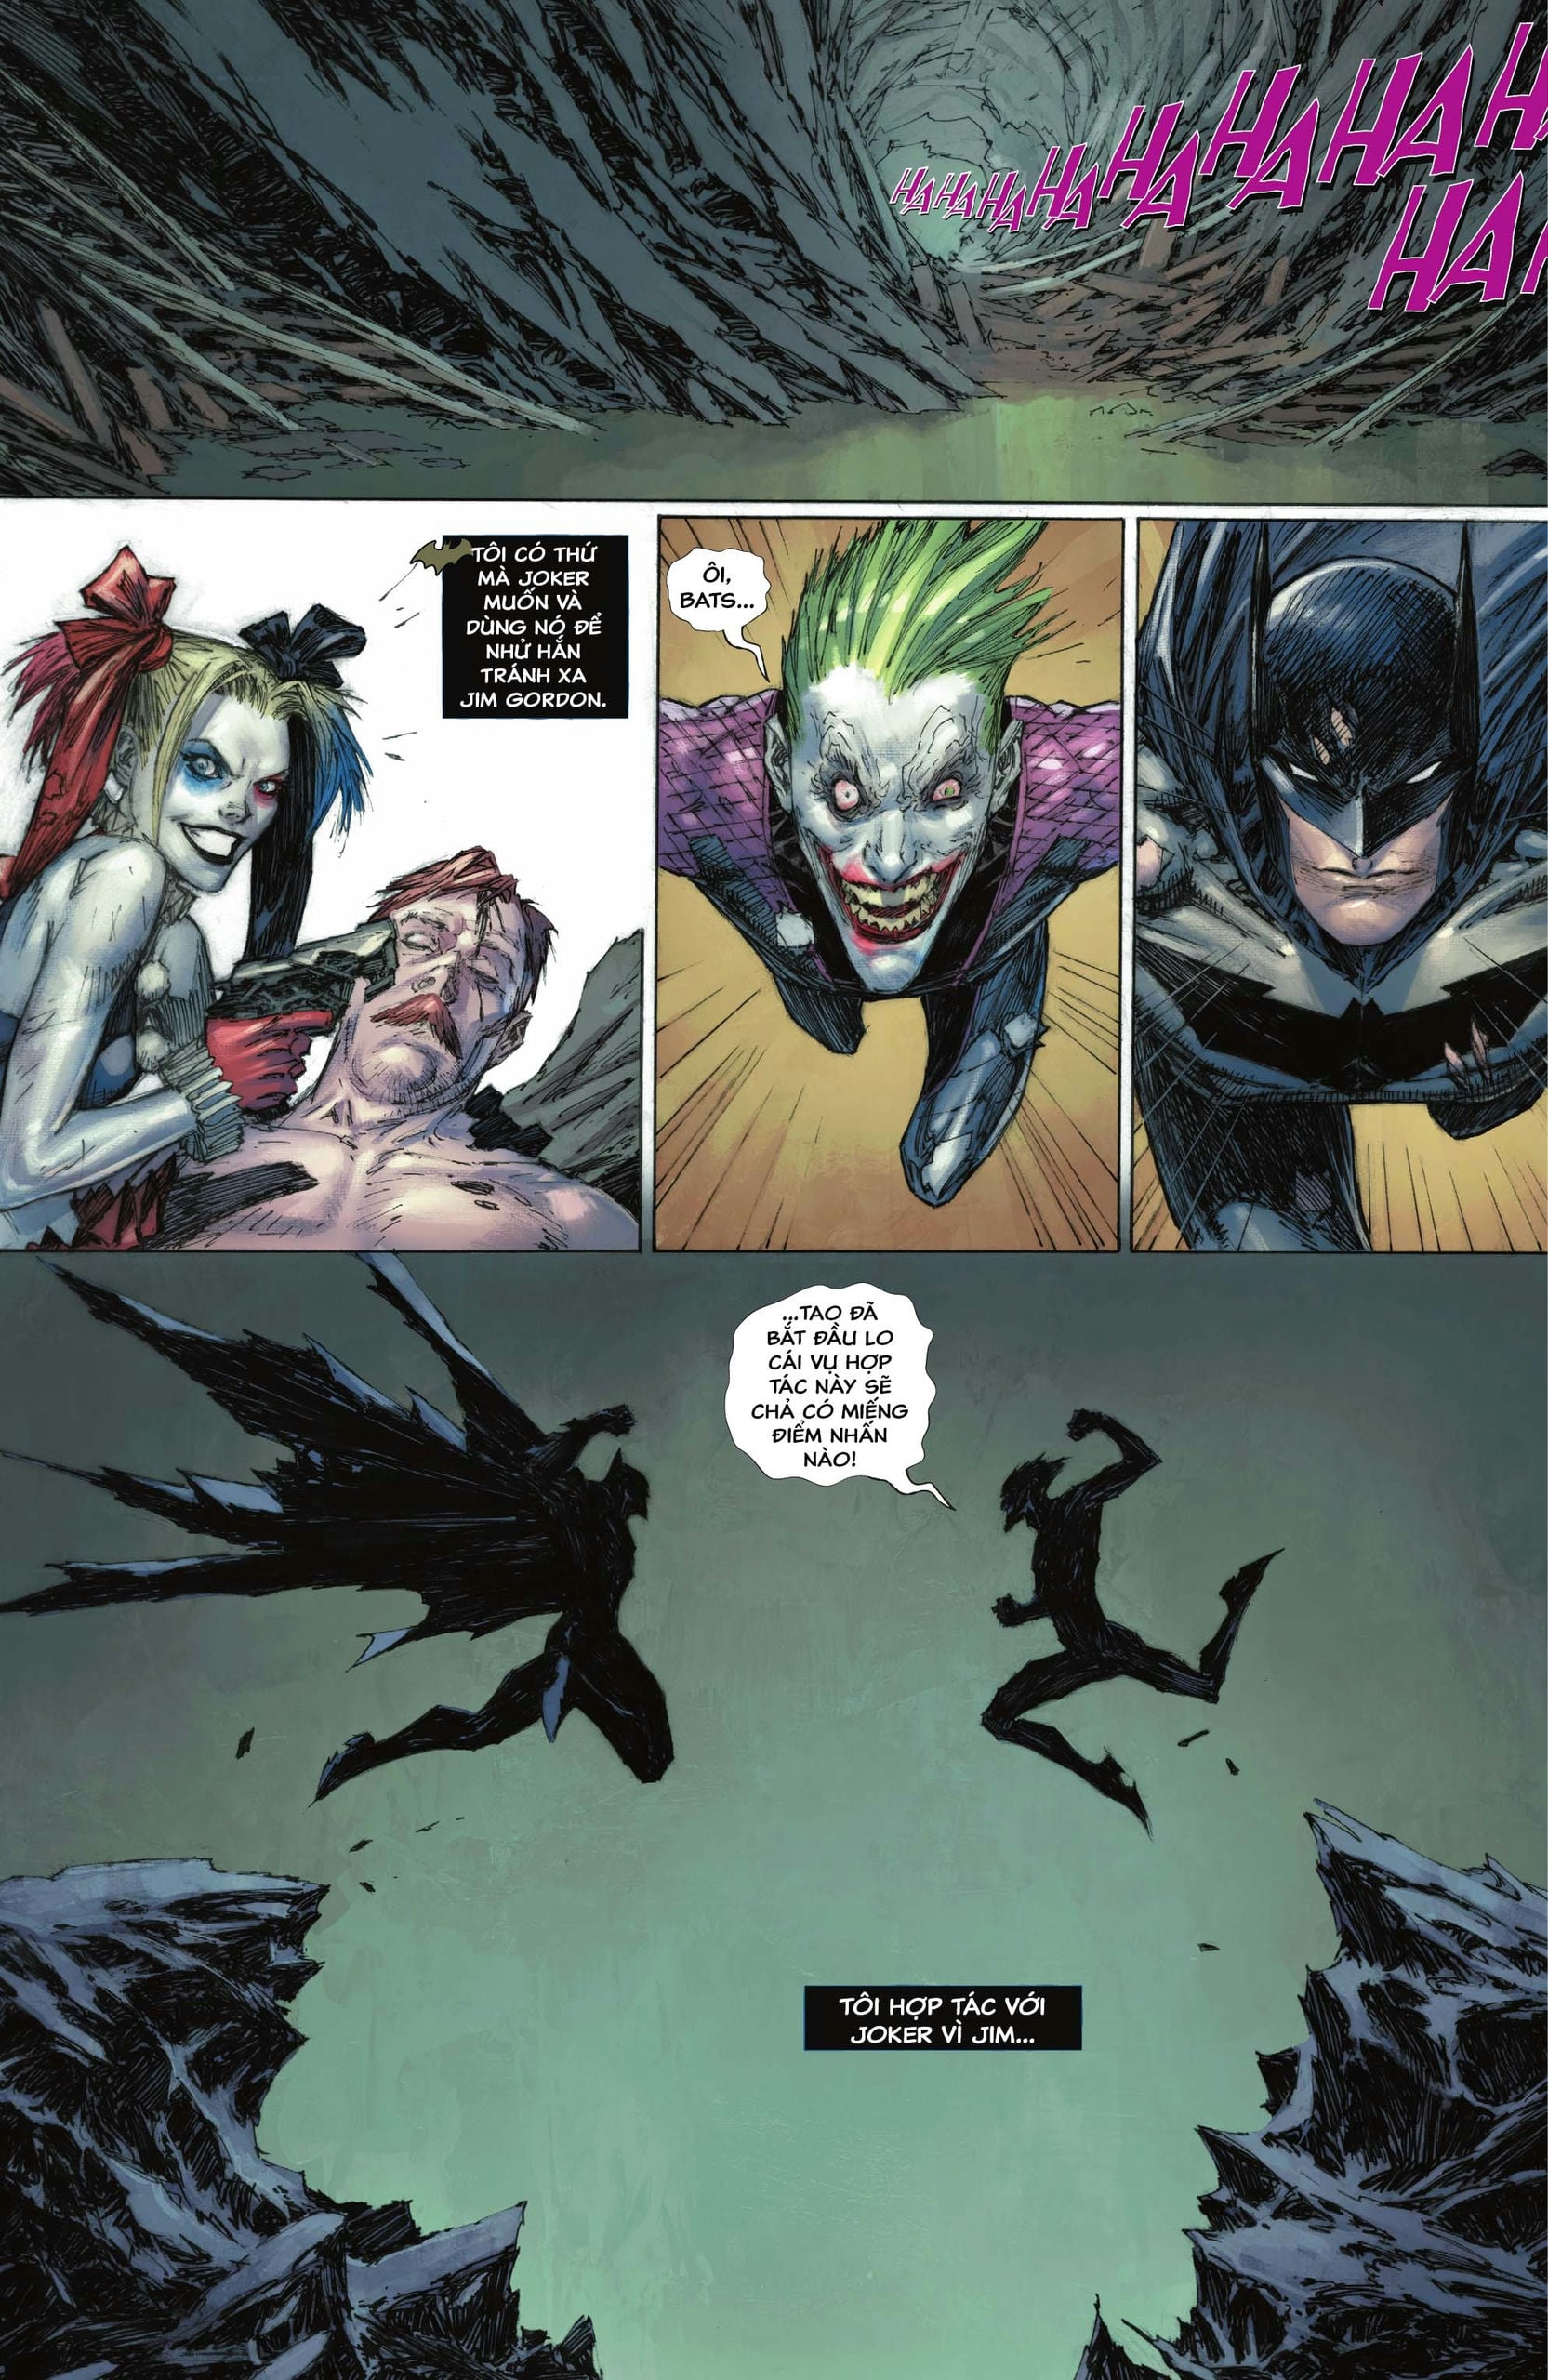 https://langgeek.net/wp-content/webpc-passthru.php?src=https://langgeek.net/wp-content/uploads/2023/05/Batman-_-The-Joker-The-Deadly-Duo-2022-007-003.jpg&nocache=1